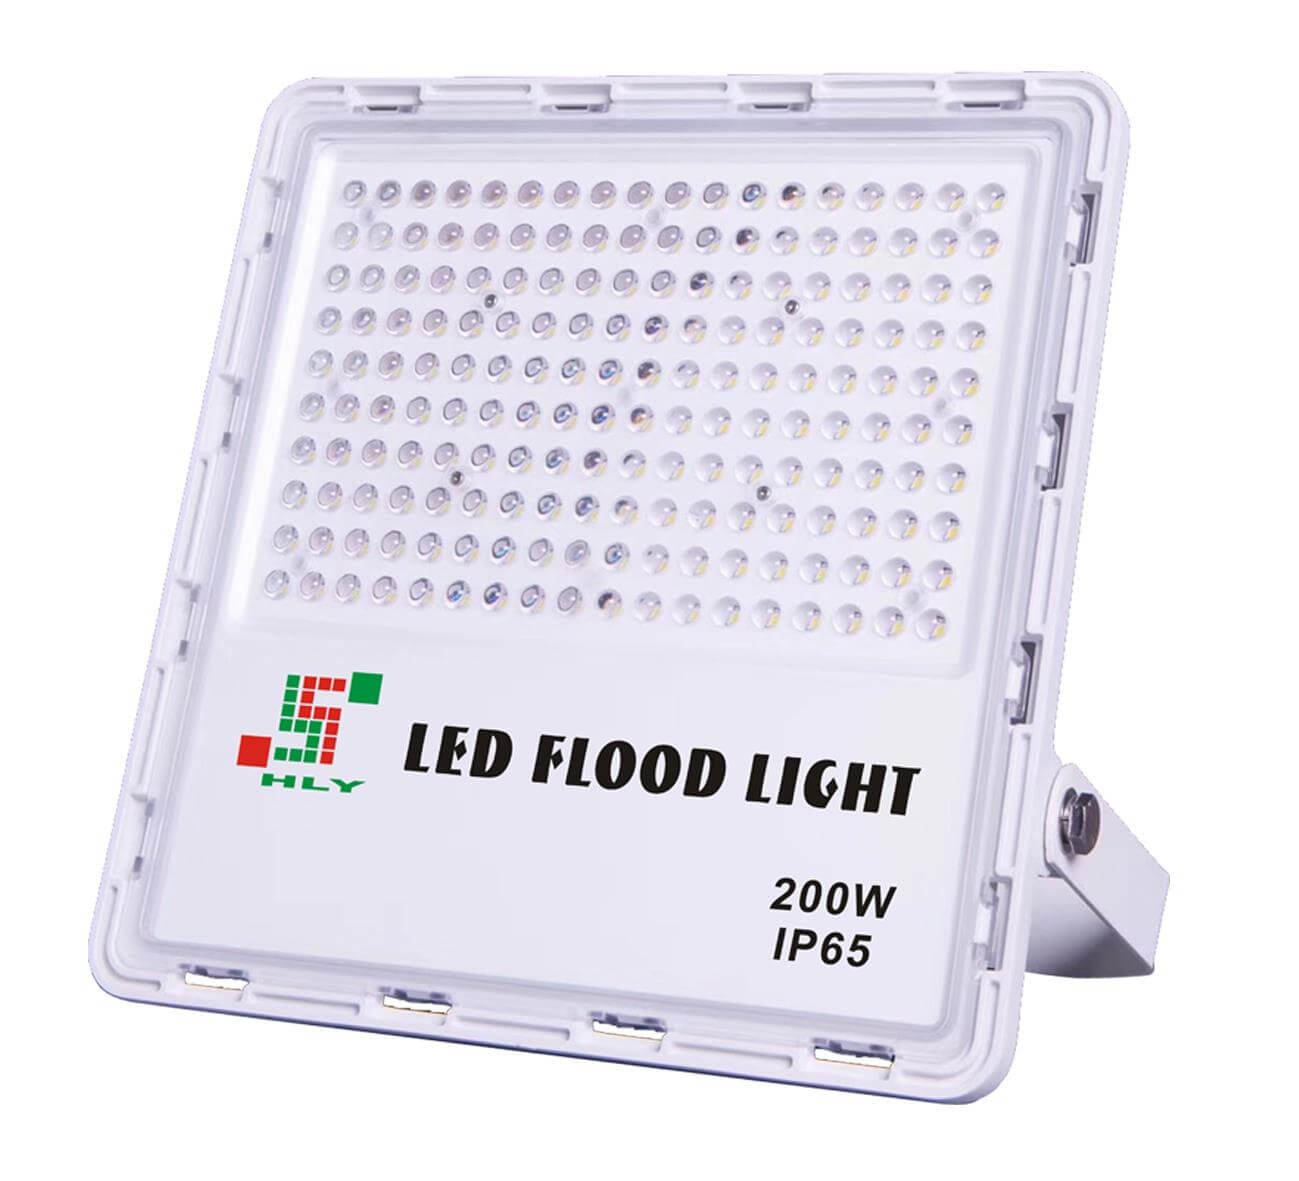 LED Flood Light Series AD